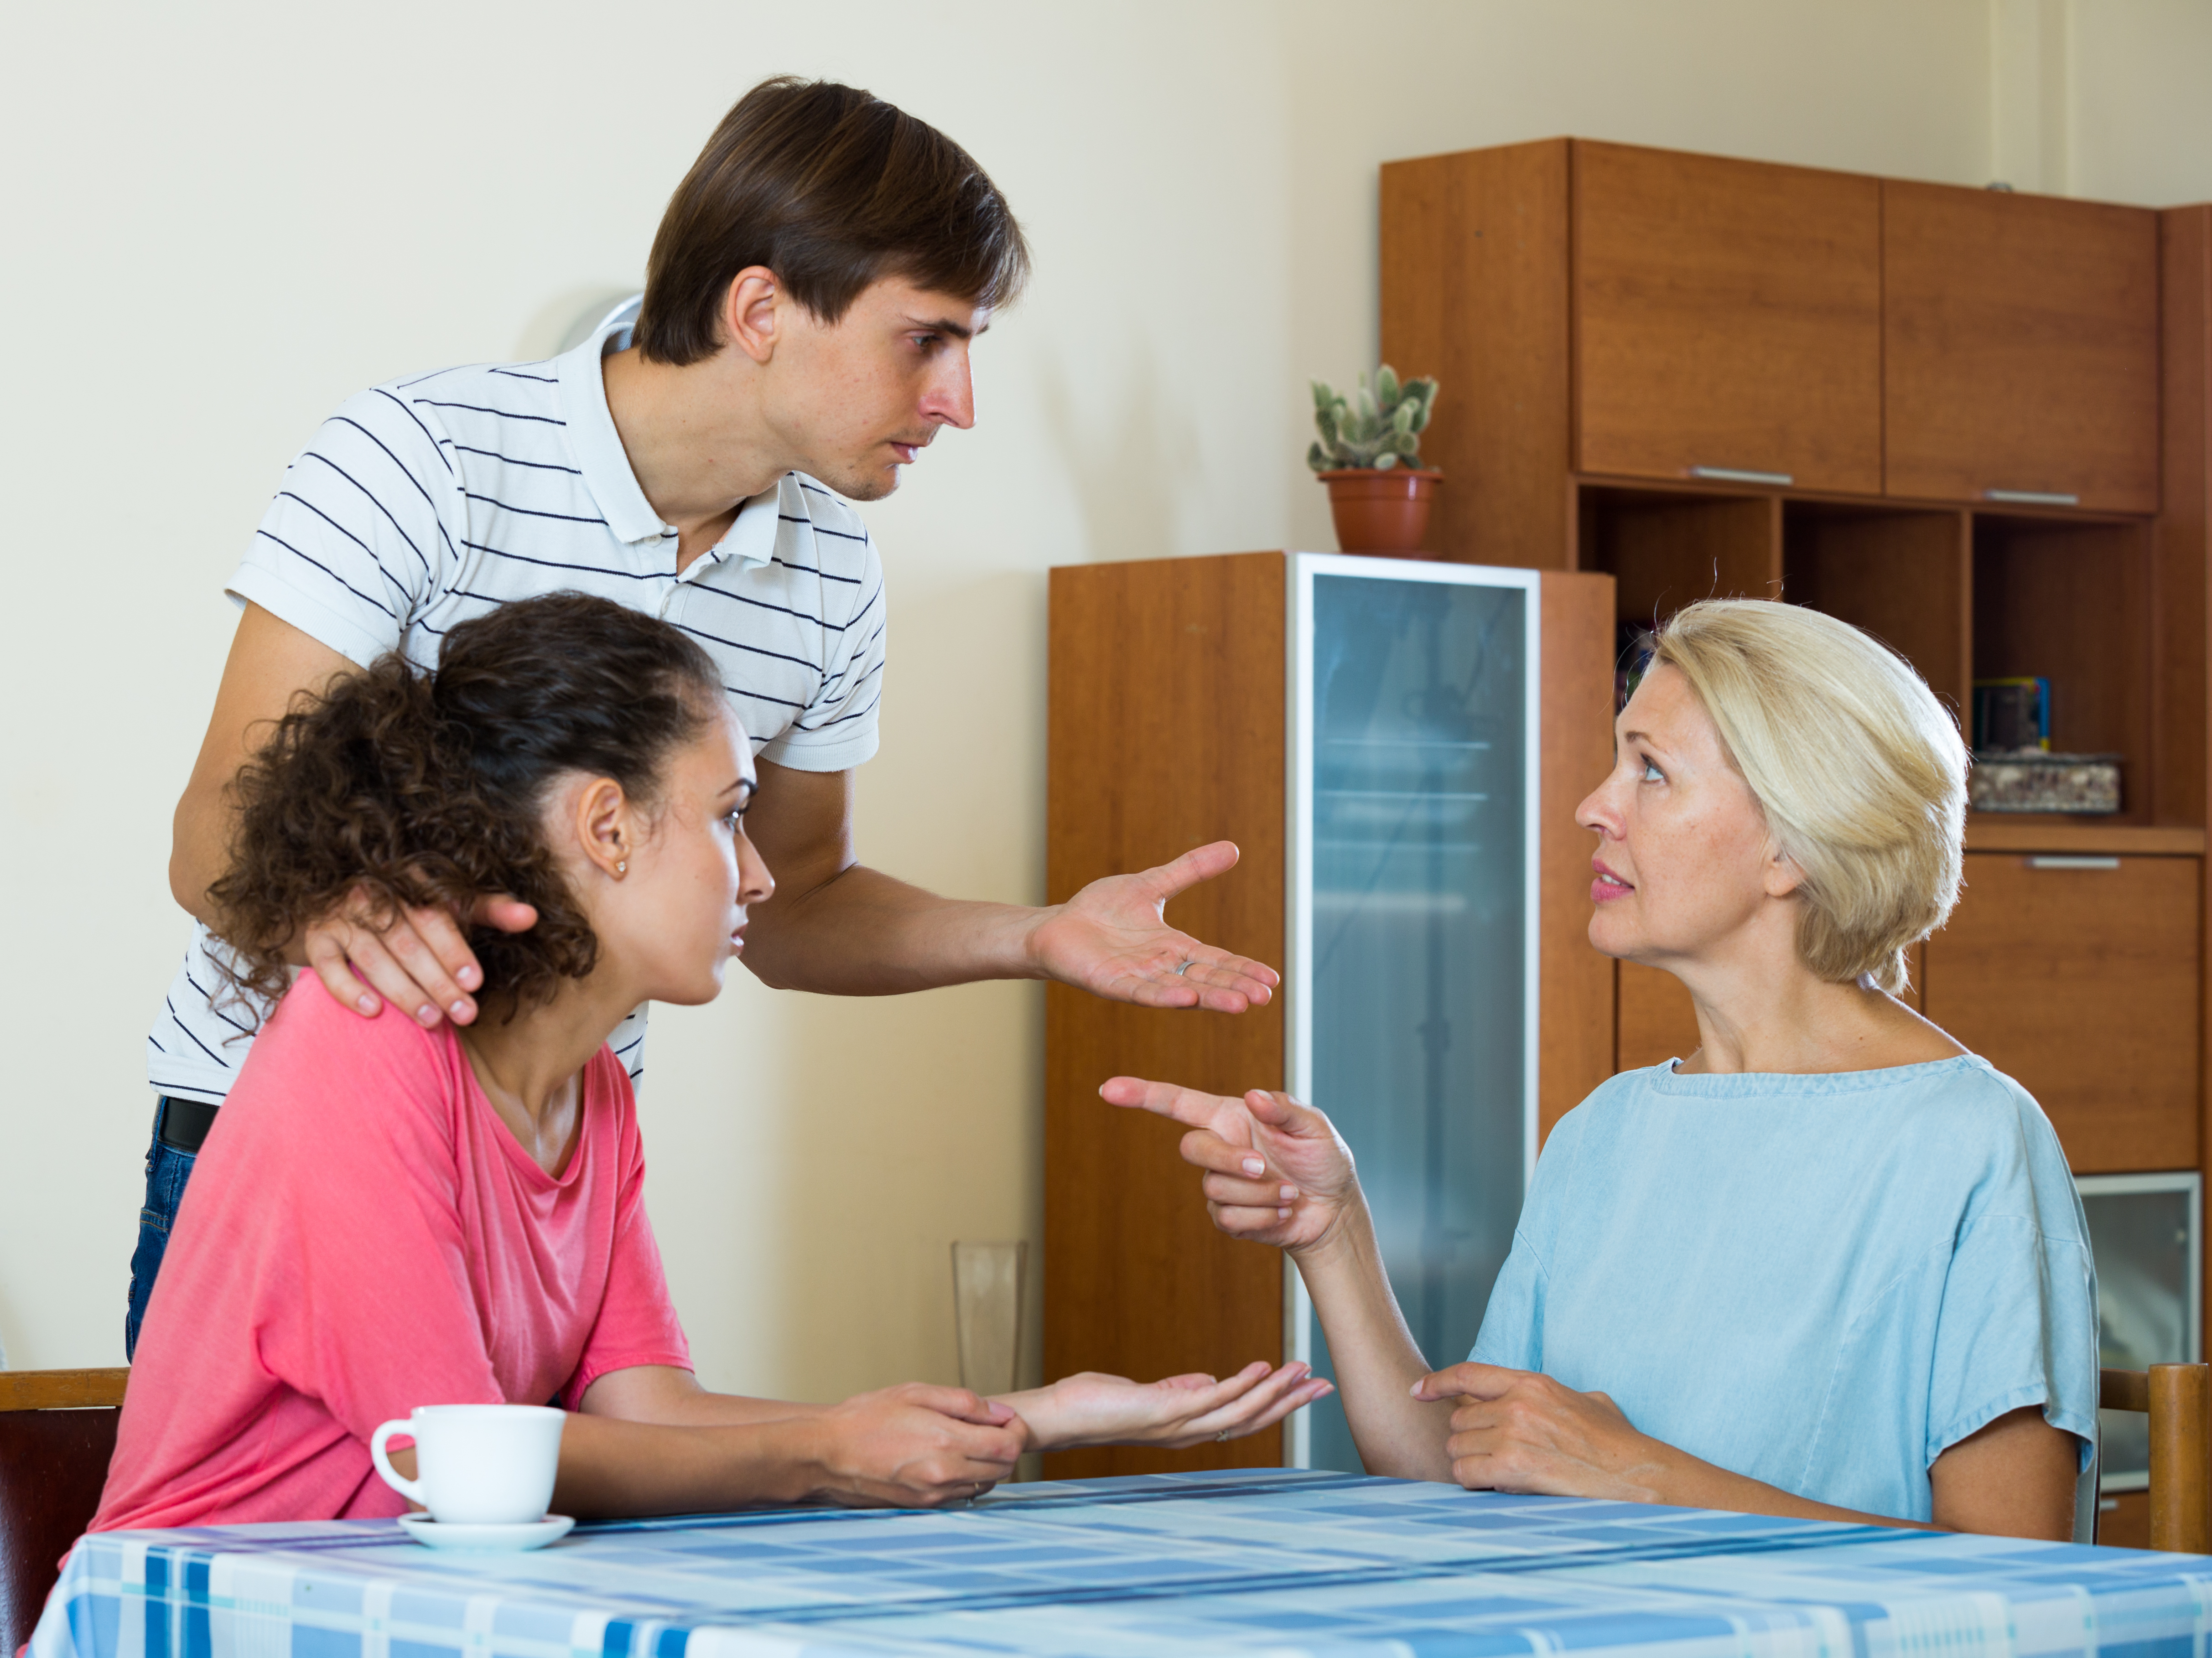 Un couple marié ayant une discussion sérieuse avec une mère âgée | Source : Shutterstock